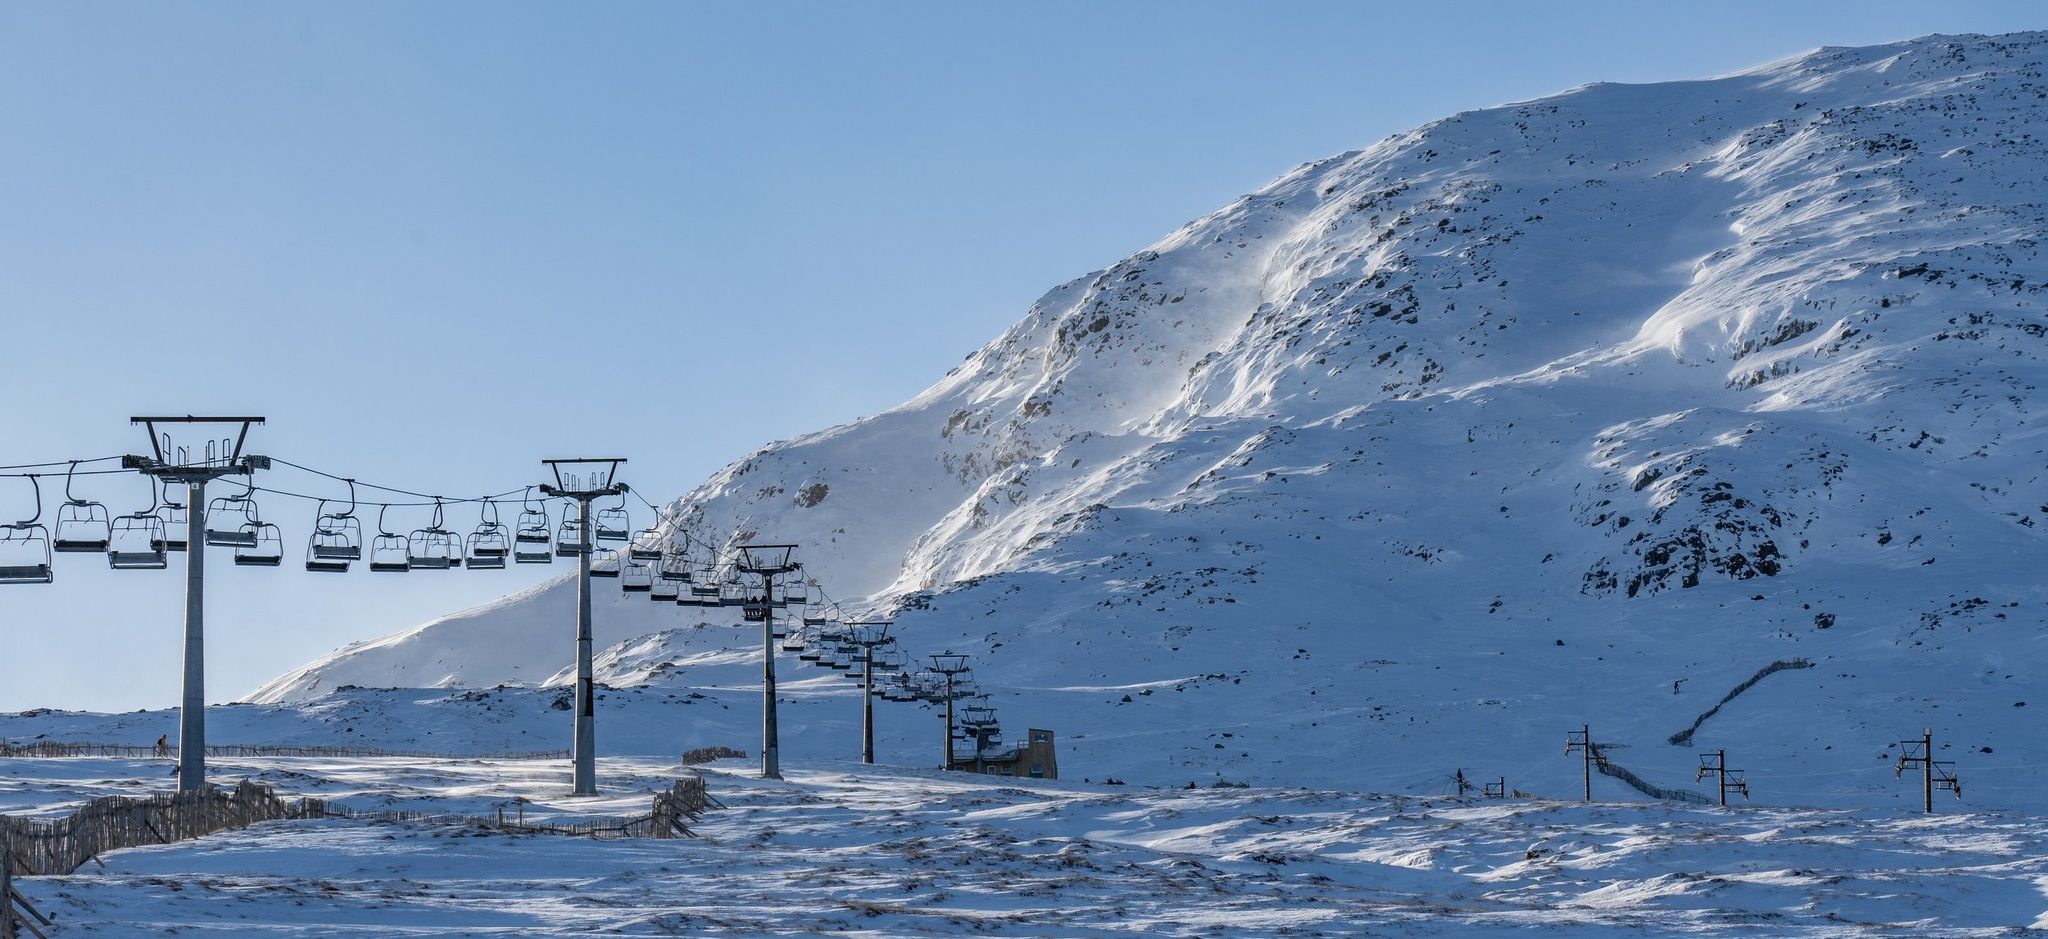 Ski Slopes on Meall a Bhuiridh in Glencoe